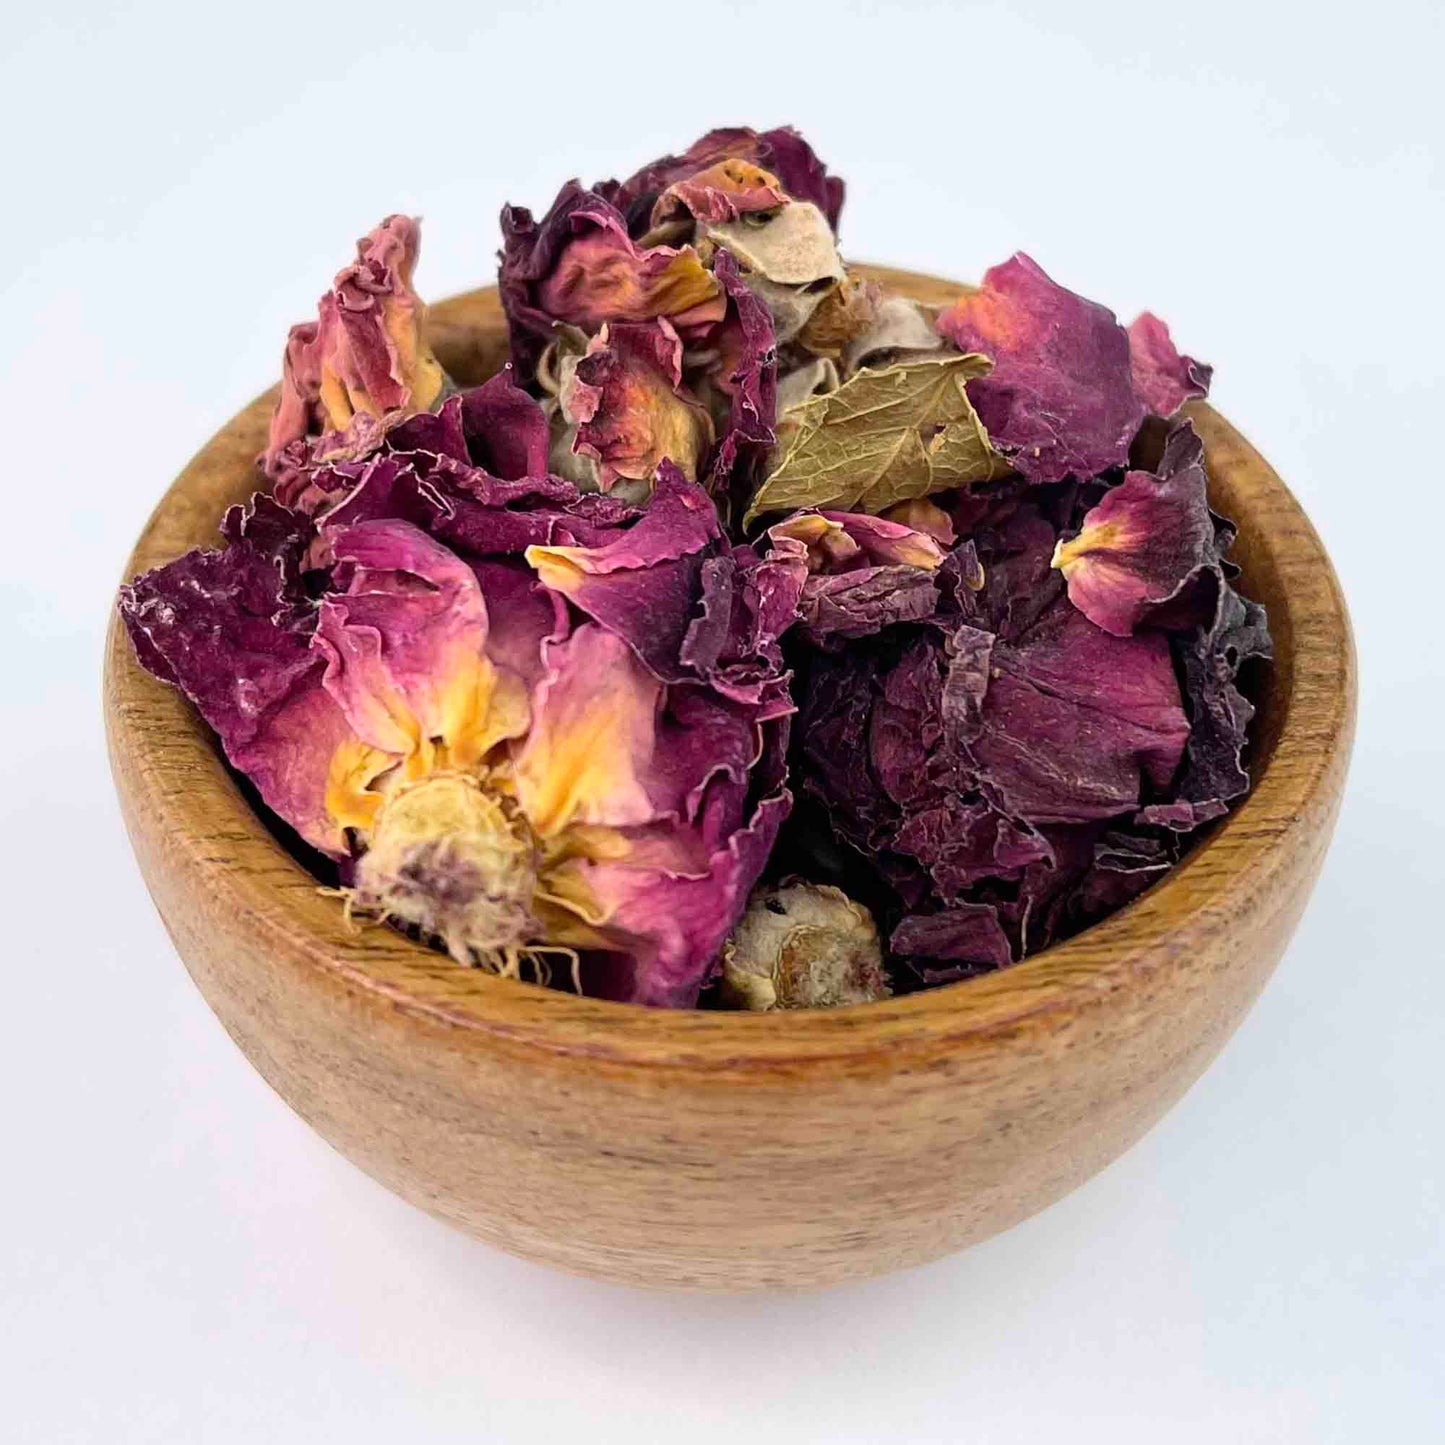 Herbal Bath Tea | Rose